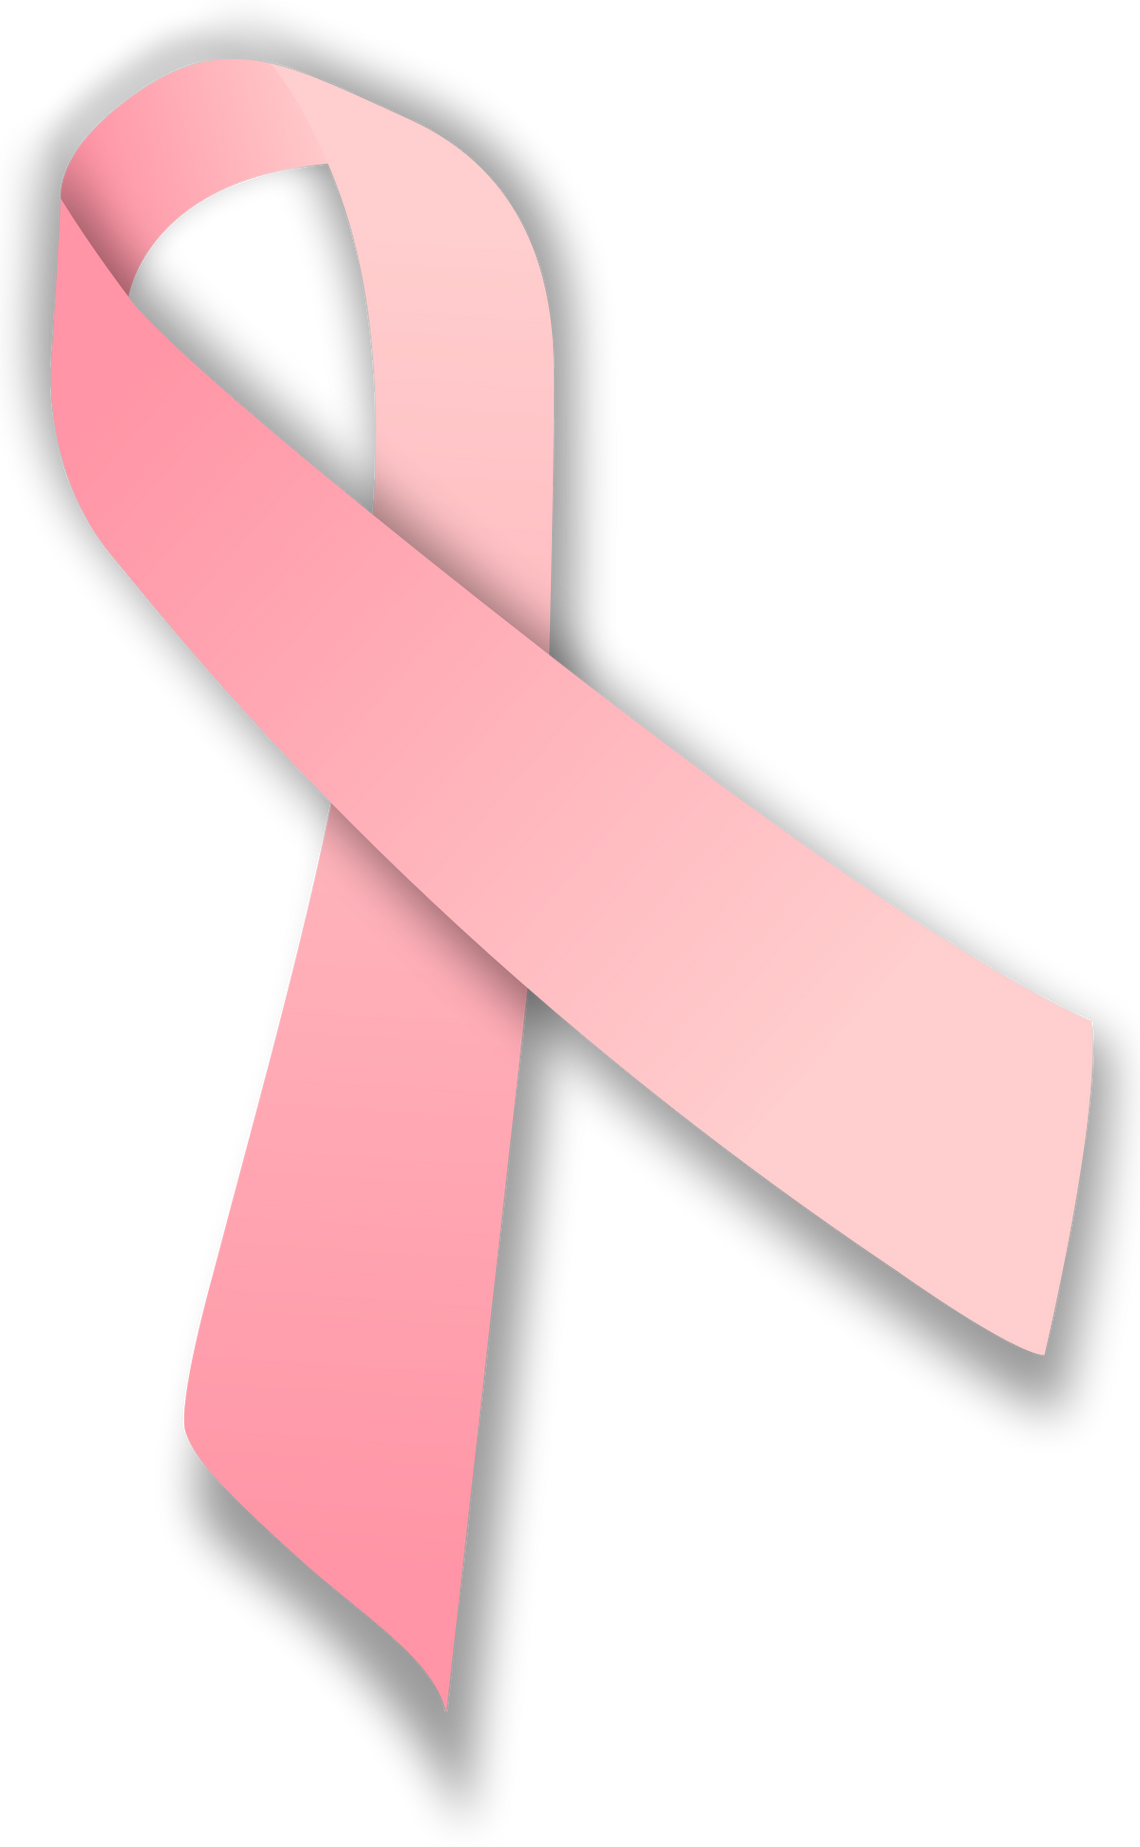 Miączyn: Bezpłatna mammografia